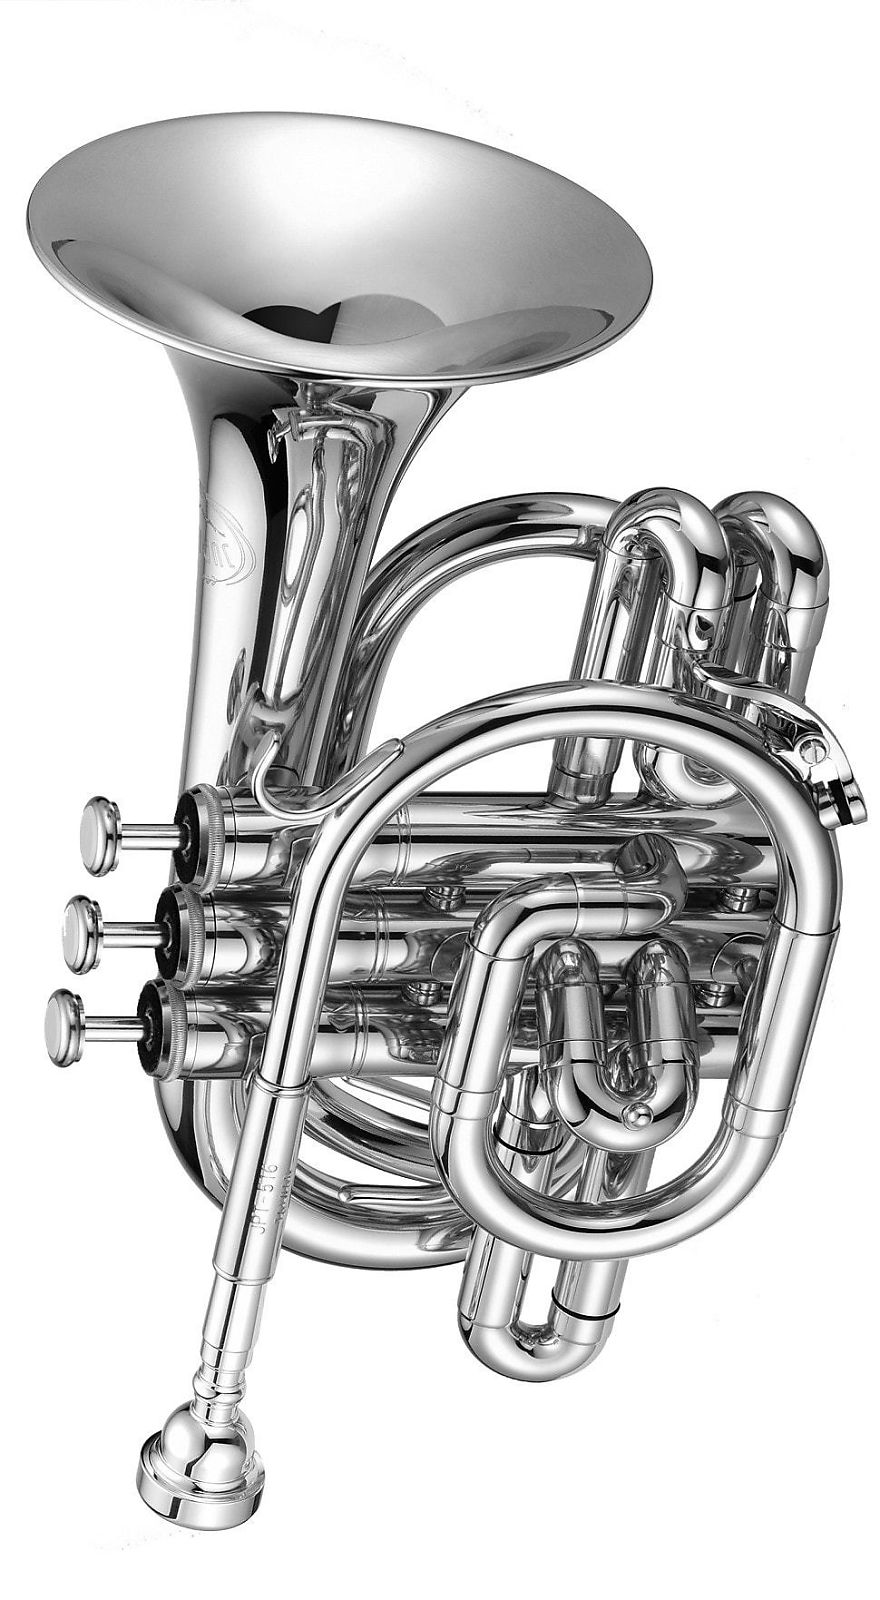 Jupiter JTR710S Pocket Bb Trumpet - Silver Plated